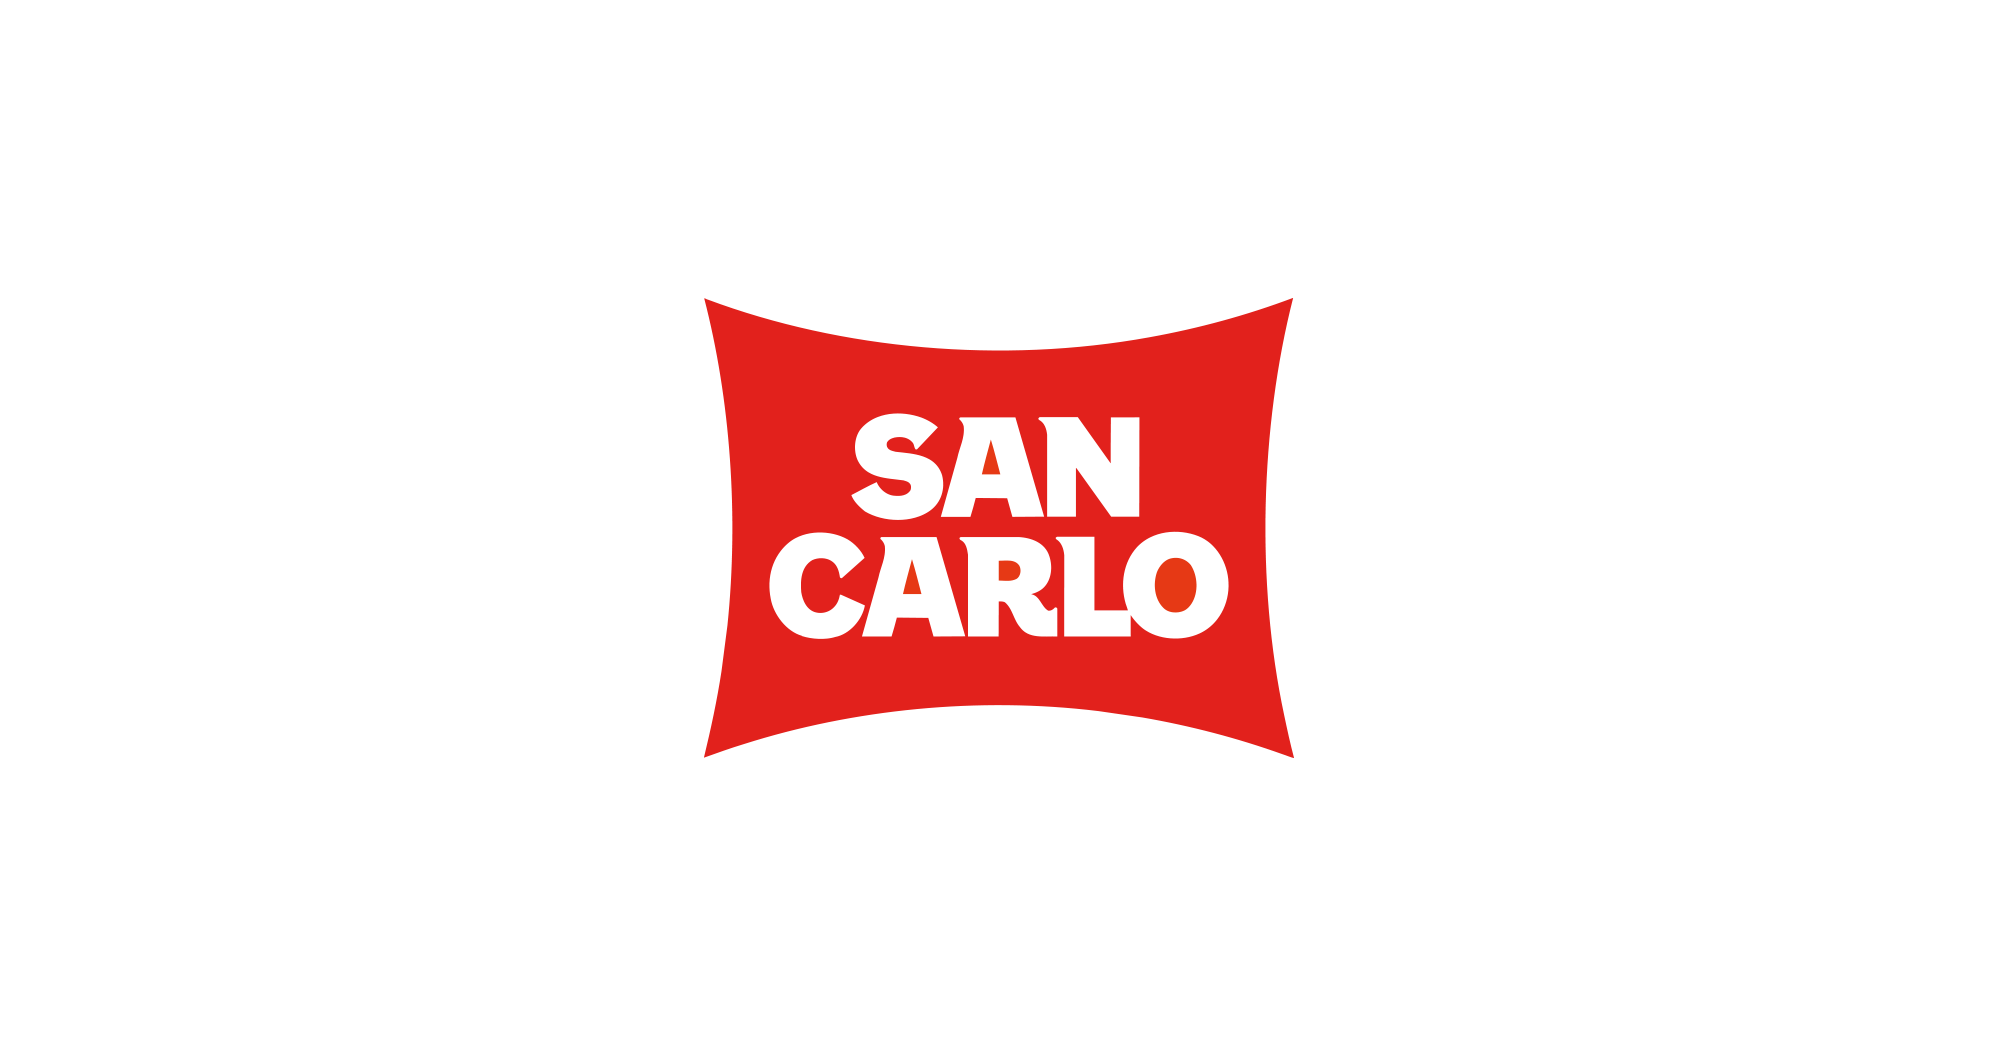 SAN CARLO